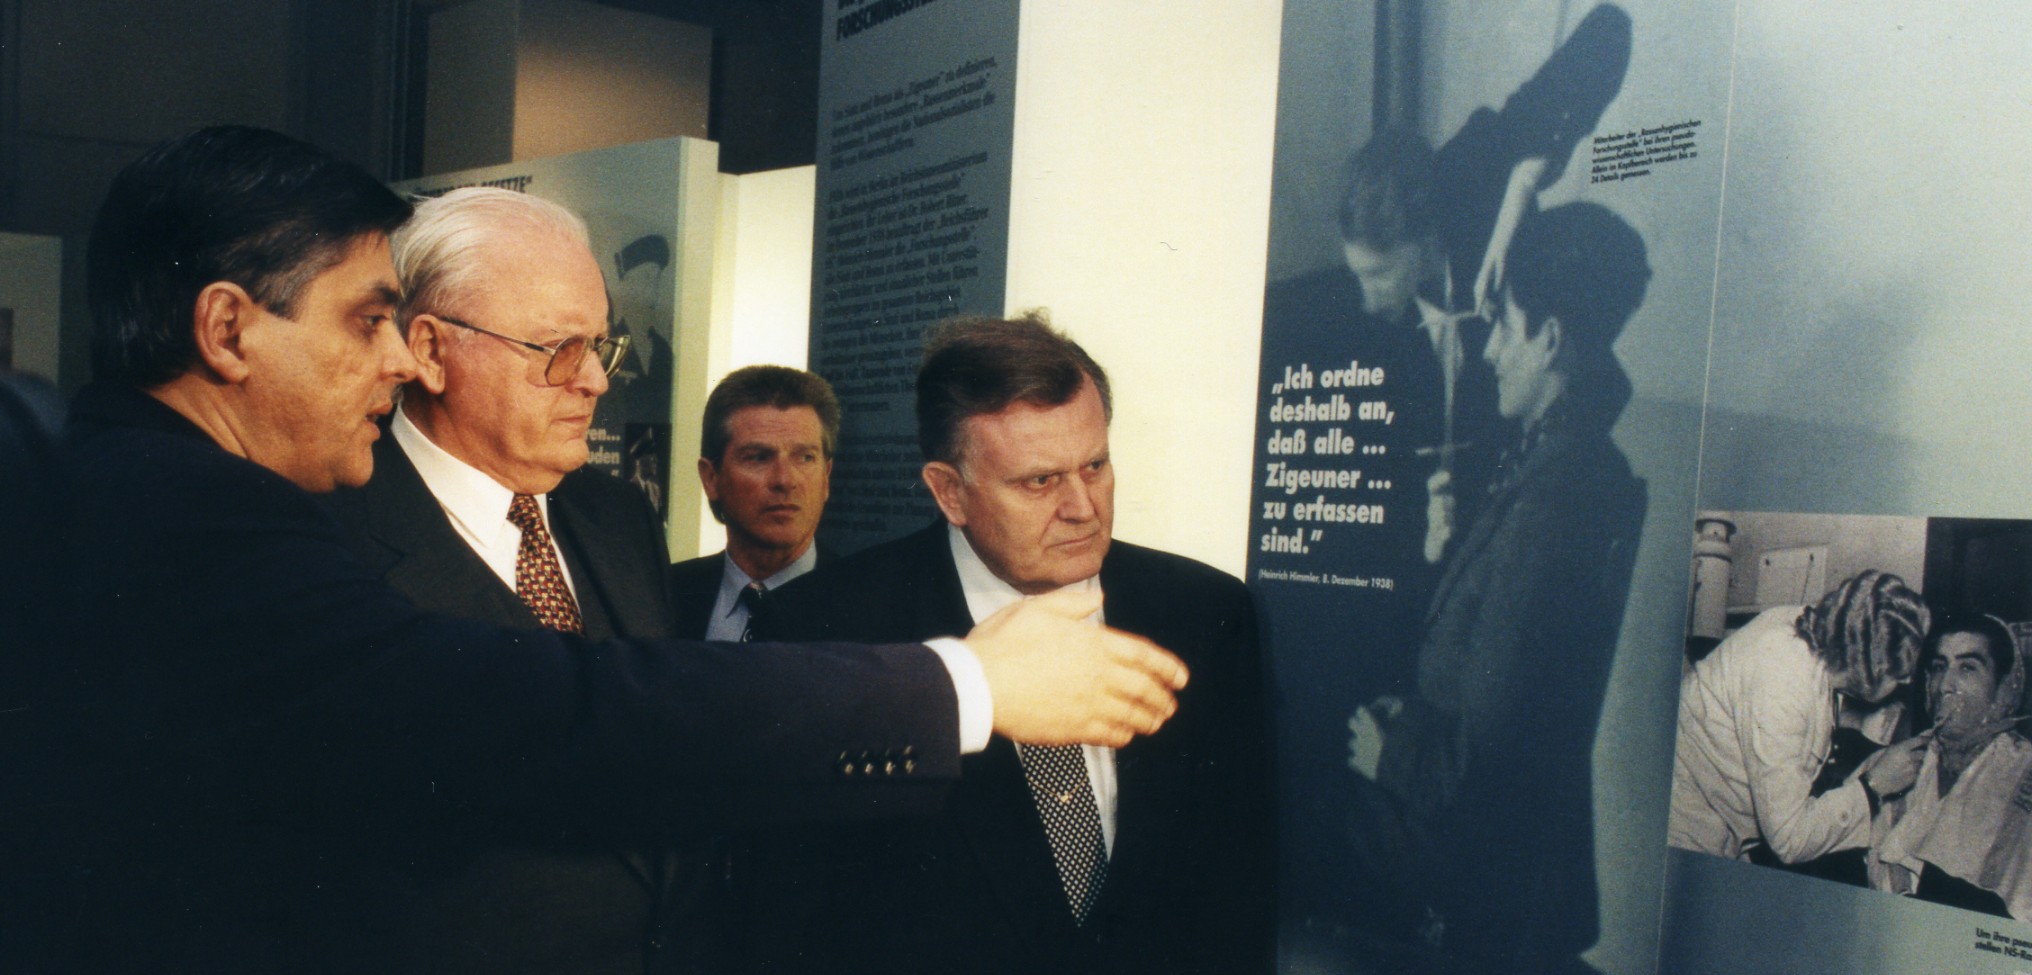 Der damalige Bundespräsident Roman Herzog mit dem baden-württembergischen Ministerpräsidenten Erwin Teufel bei der Eröffnung des Dokumentations- und Kulturzentrums Deutscher Sinti und Roma, 16. März 1997.